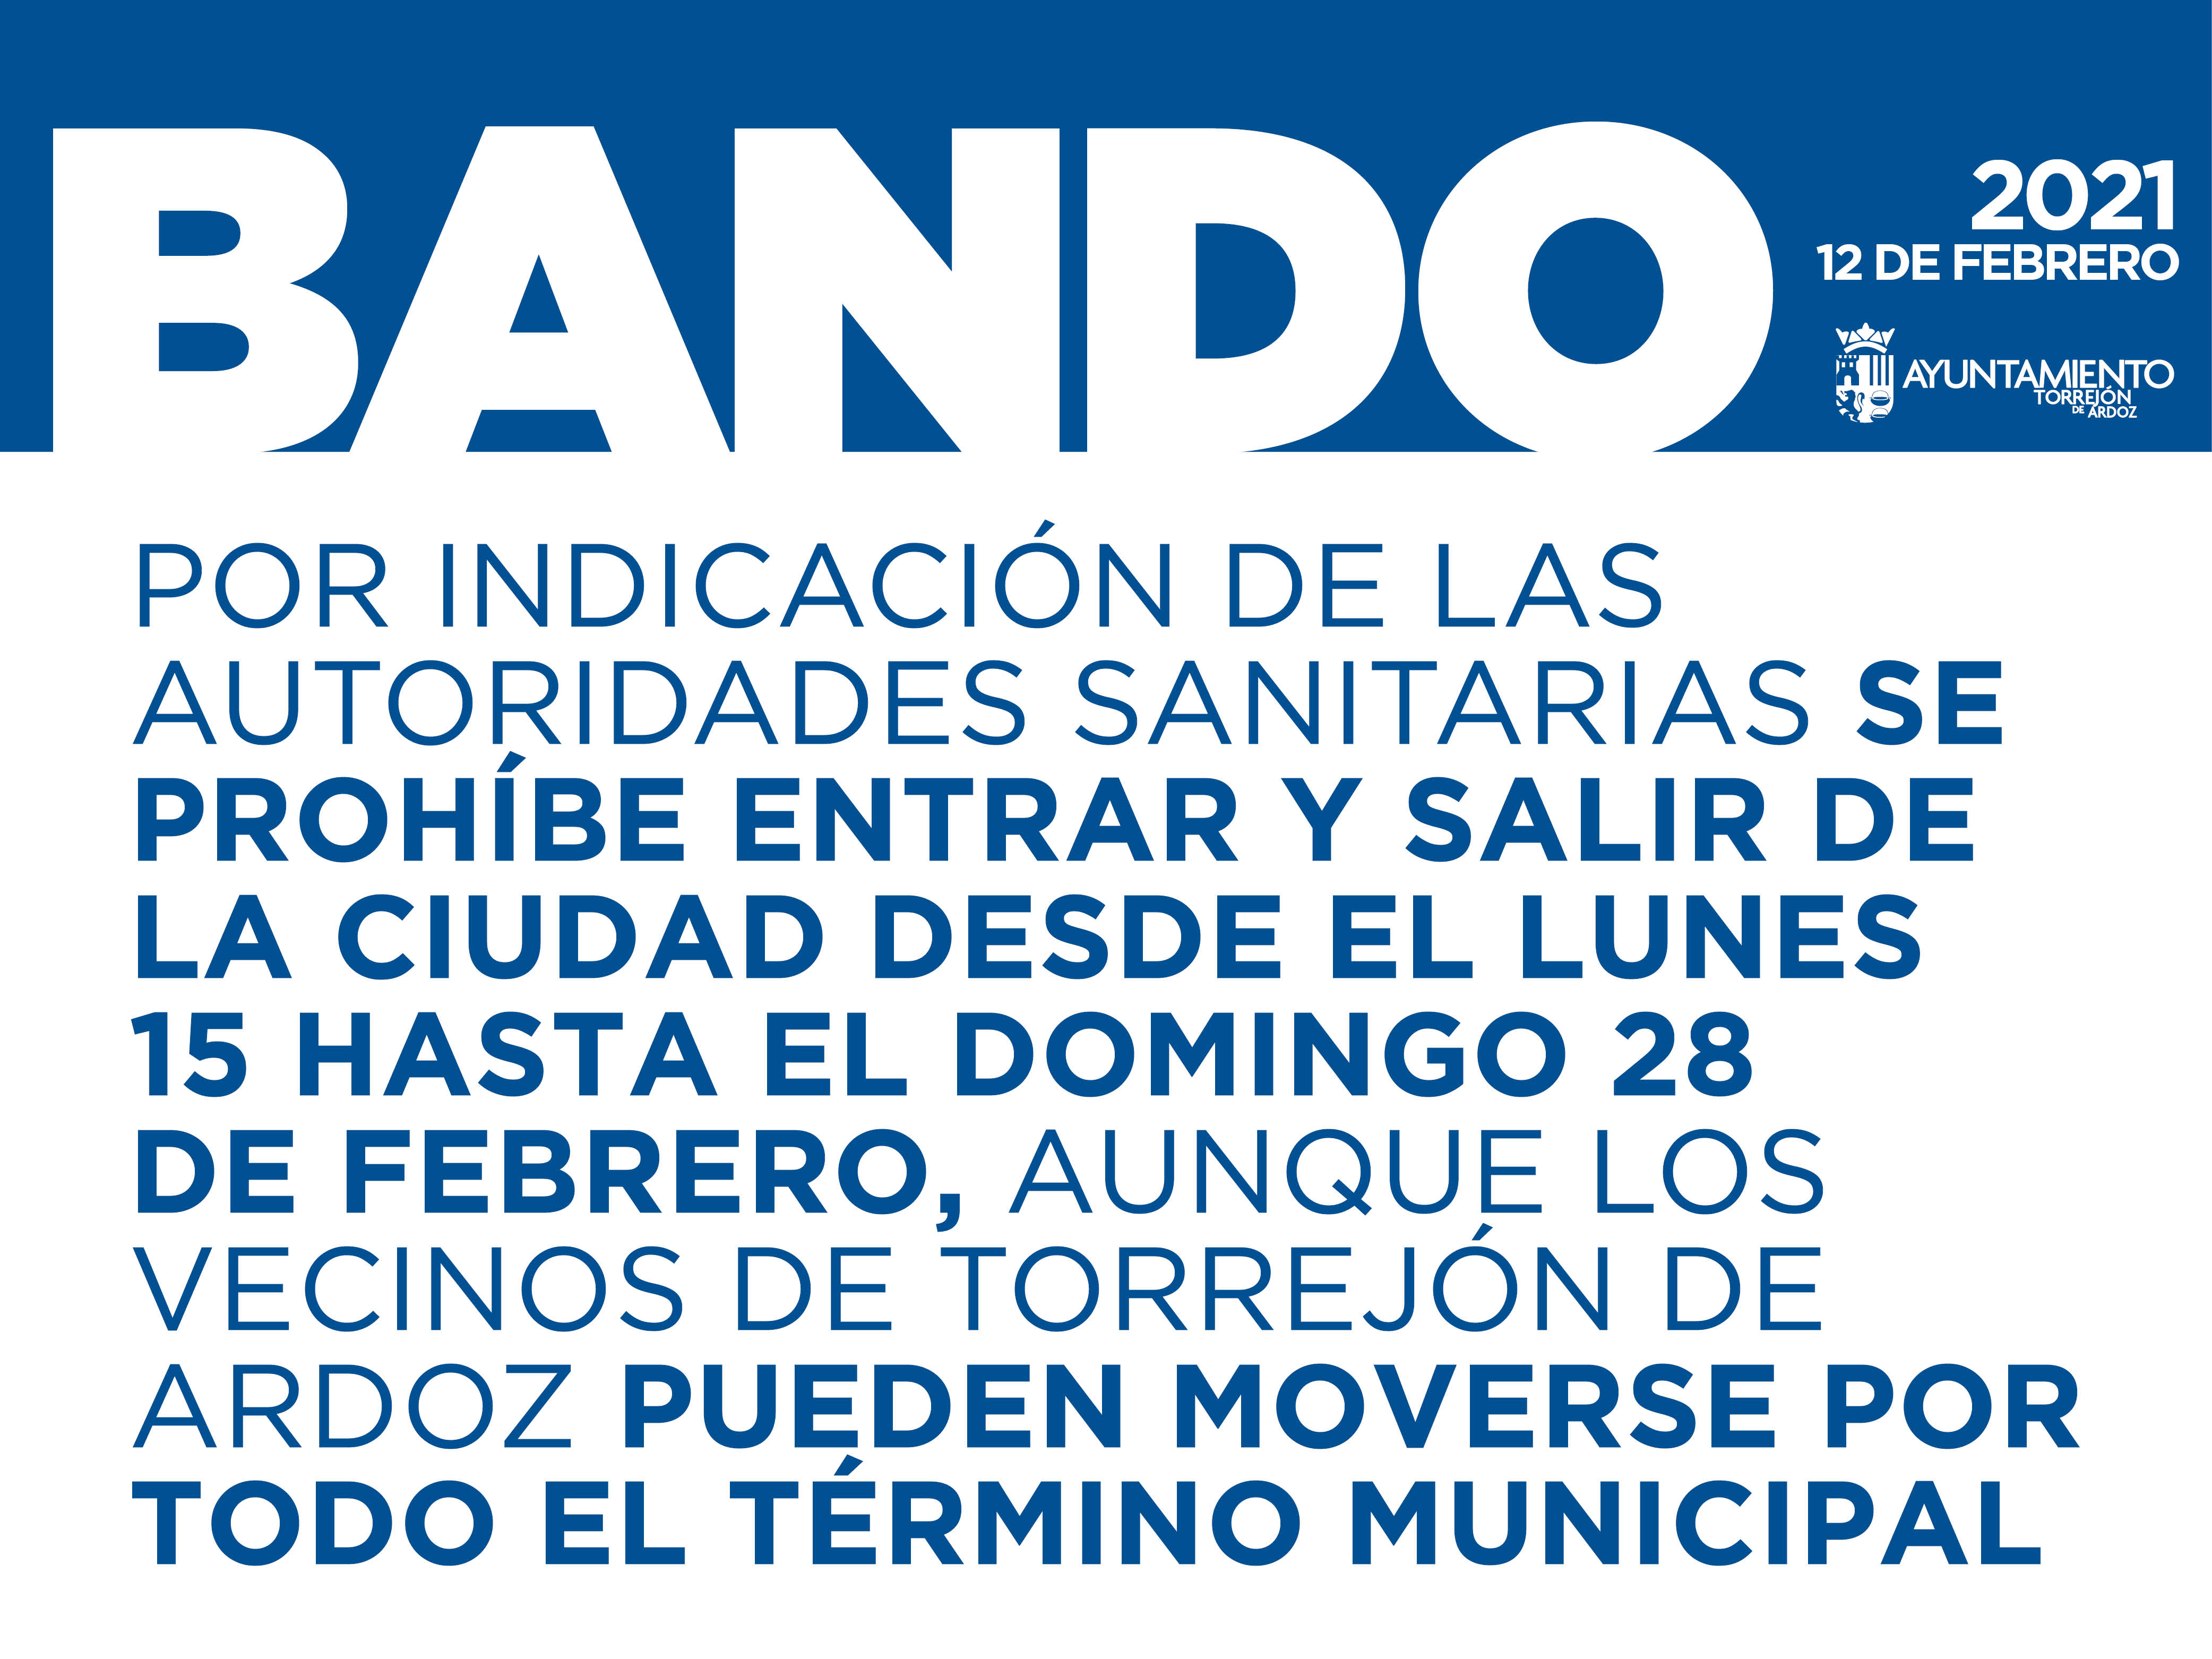 Por indicación de las autoridades sanitarias, se prohíbe entrar y salir de la ciudad desde el lunes 15, hasta el domingo 28 de febrero, aunque los vecinos de Torrejón de Ardoz pueden moverse por todo el término municipal